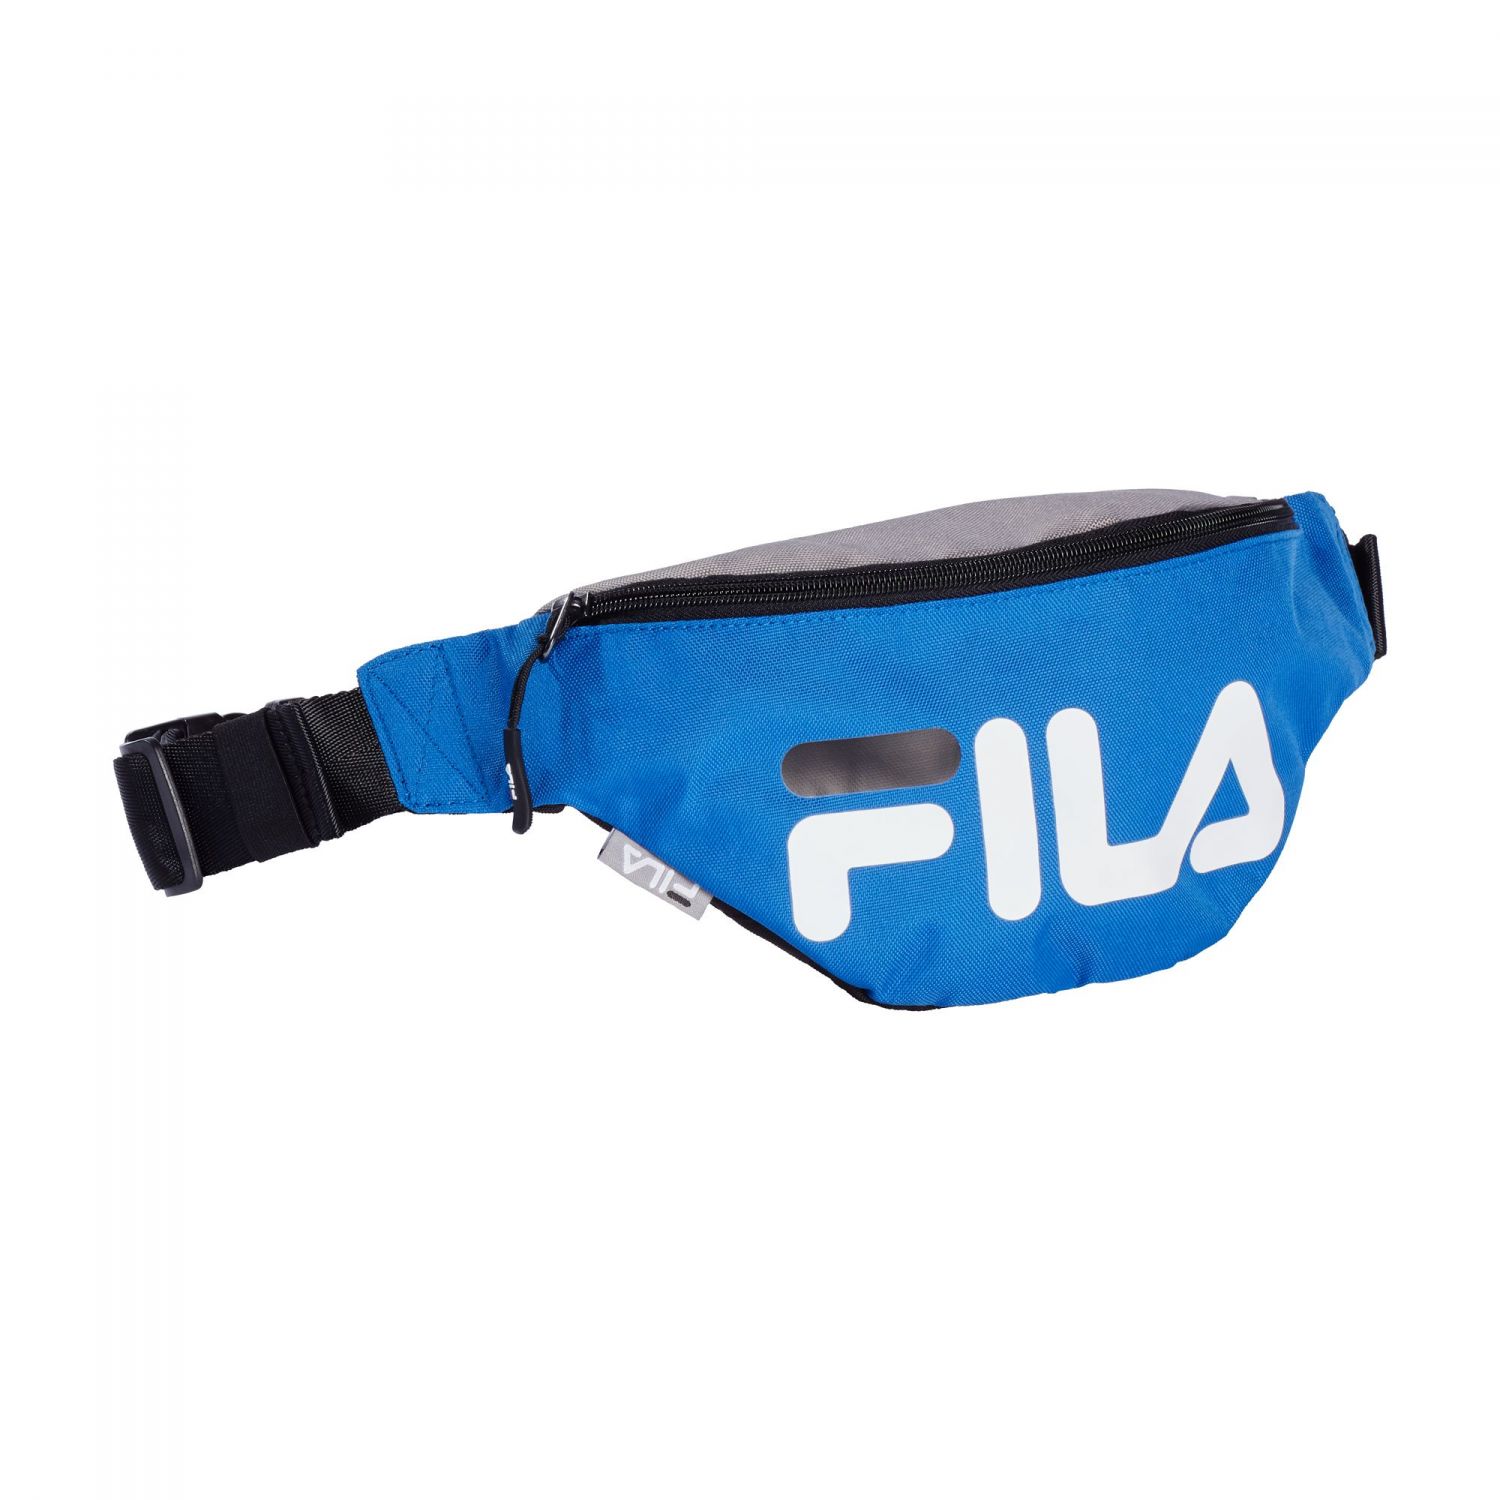 Fila Waist Bag Slim - blue | FILA Official